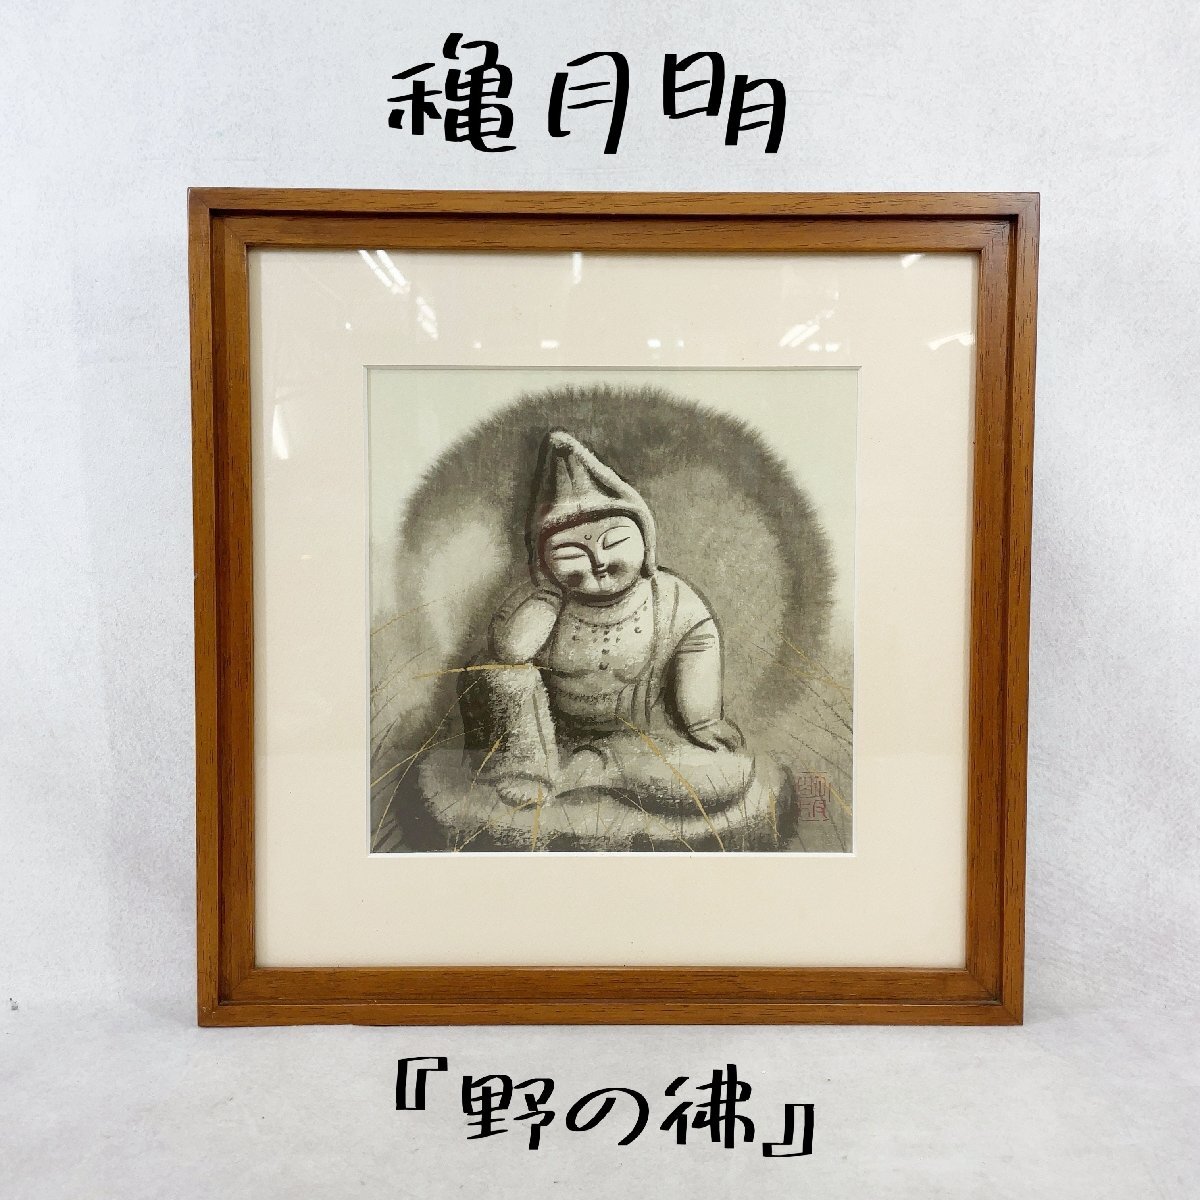 अकीरा अकिज़ुकी मूल लिथोग्राफ बुद्ध ऑफ़ द फील्ड सीमित संस्करण 93/200 पेंटिंग चित्र बौद्ध पेंटिंग बुद्ध जल रंग पेंटिंग लकड़ी का फ्रेम ऐक्रेलिक बोर्ड सजावट कला, कलाकृति, चित्रकारी, अन्य